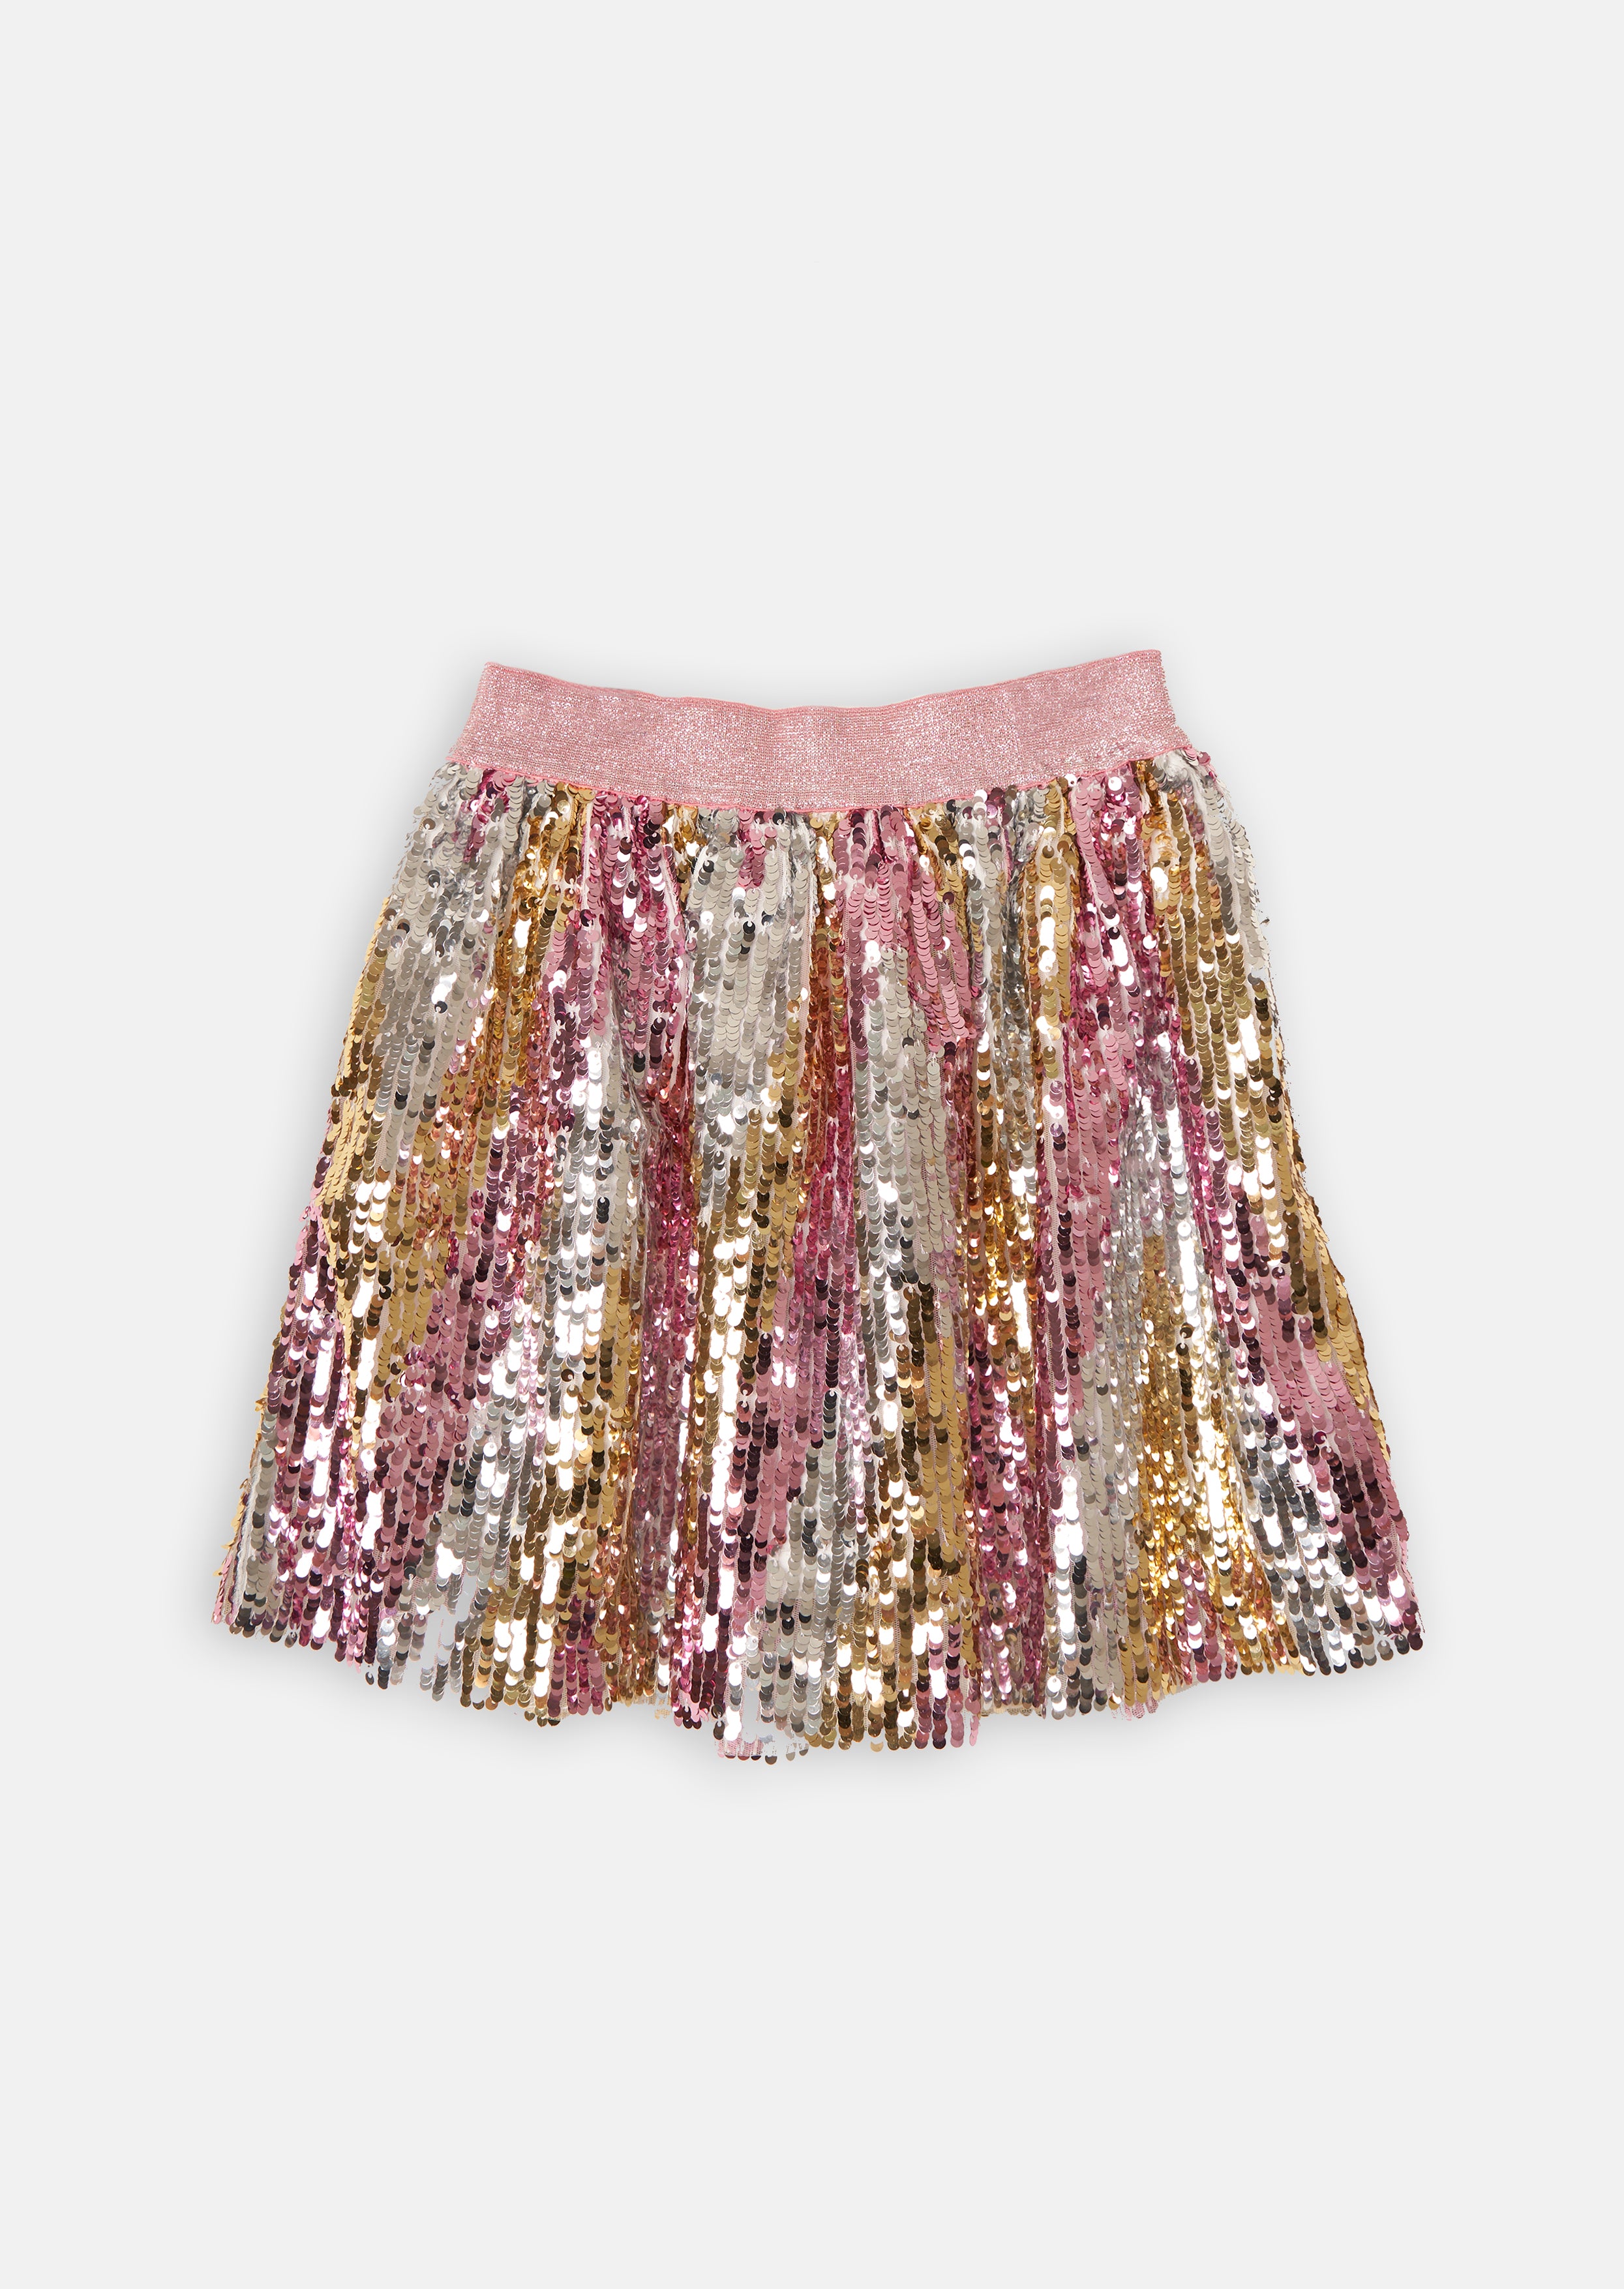 Girls Sequin Embellished Pink Skirt